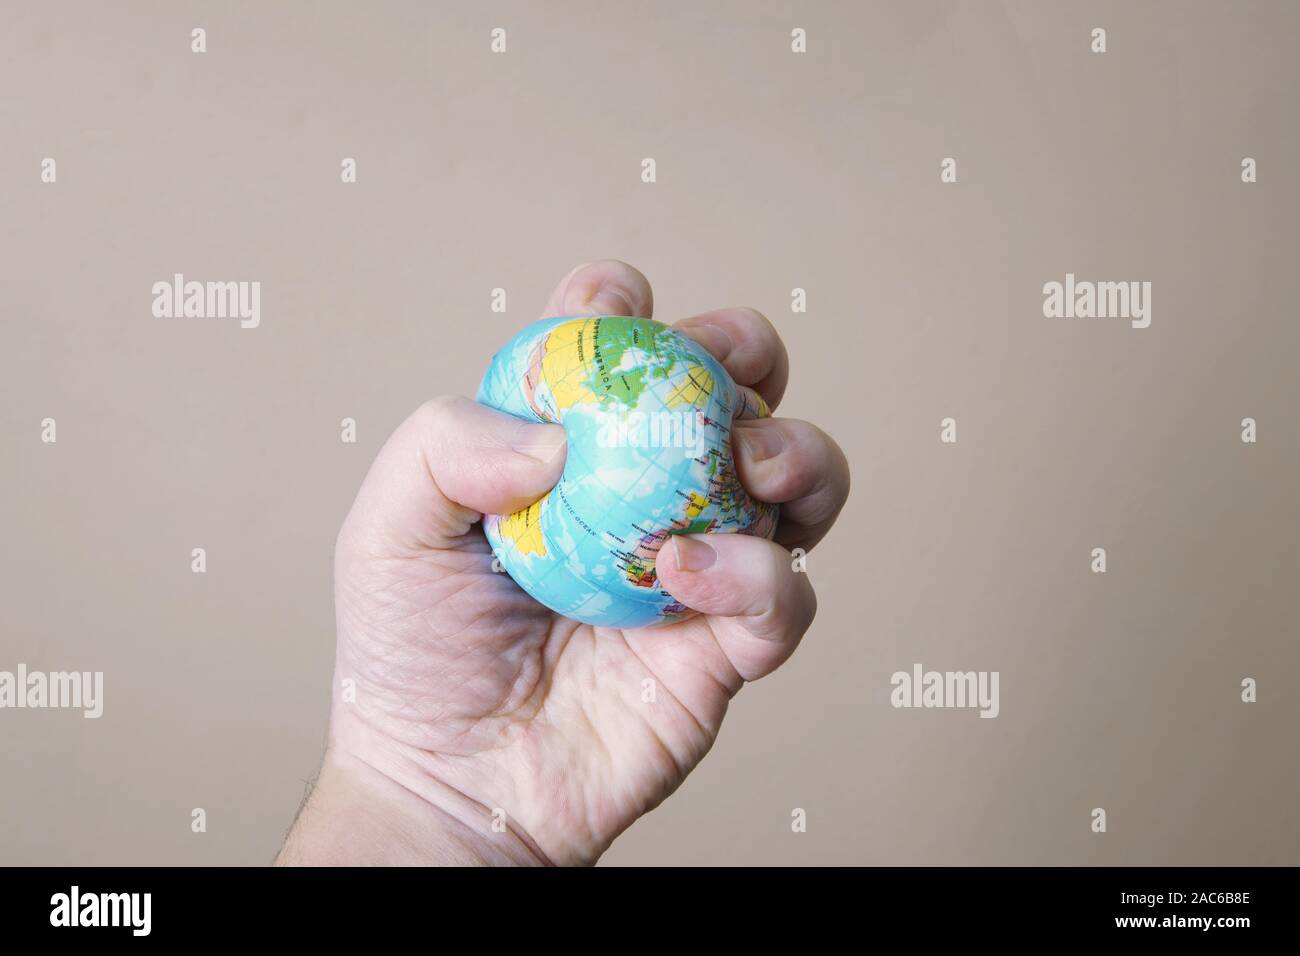 Umweltzerstörung Konzept - Quetschgefahr für die Hände oder quetschen Globus der Planet Erde - Zerstörung der Umwelt Stockfoto